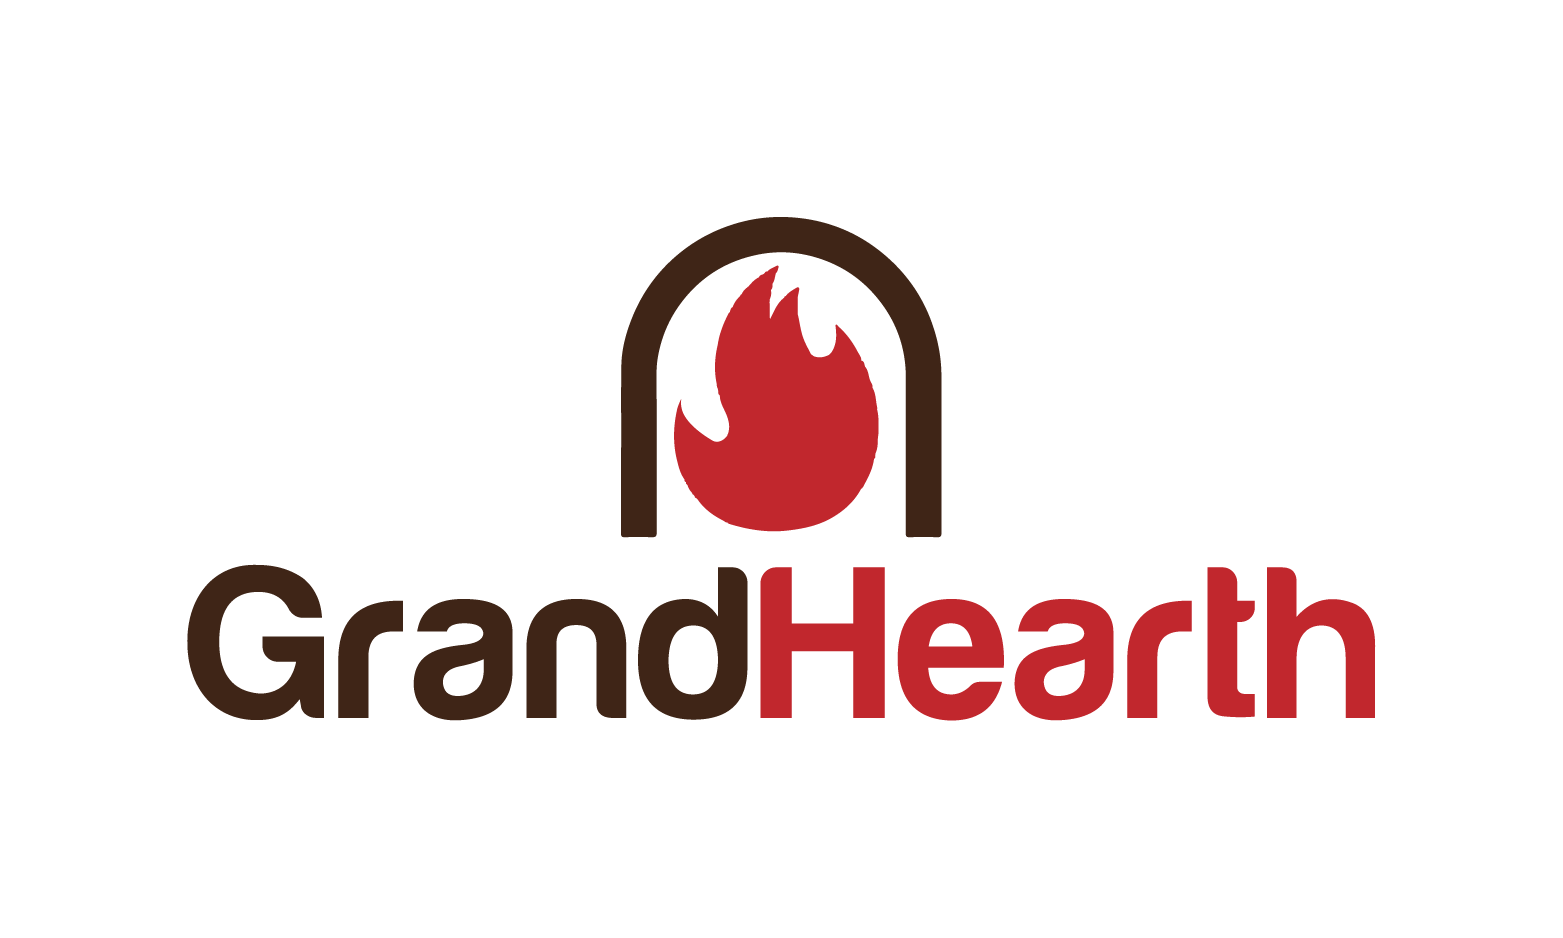 GrandHearth.com - Creative brandable domain for sale